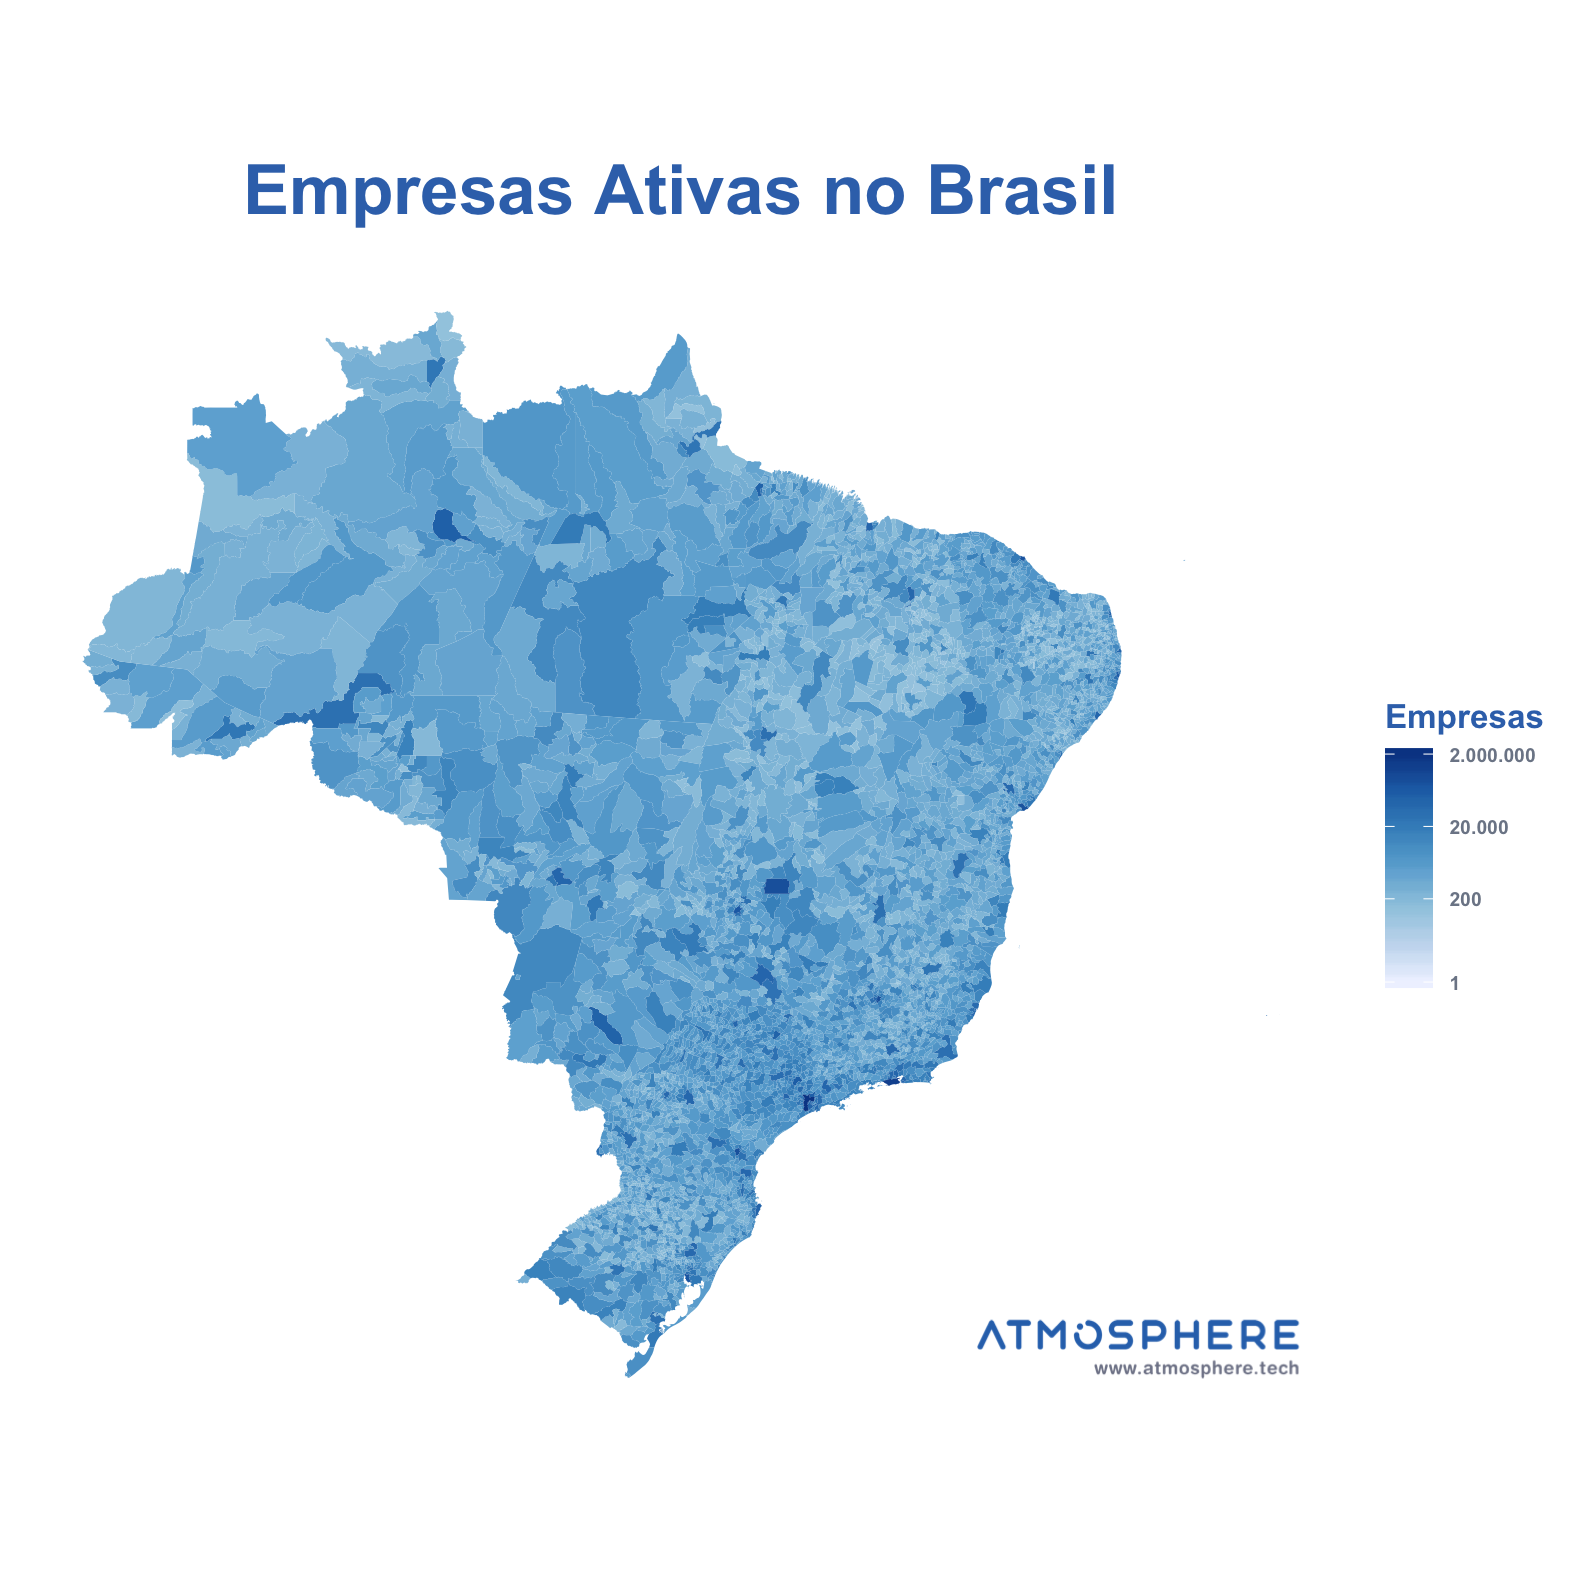 Atmosphere Empresas Ativas por Município no Brasil